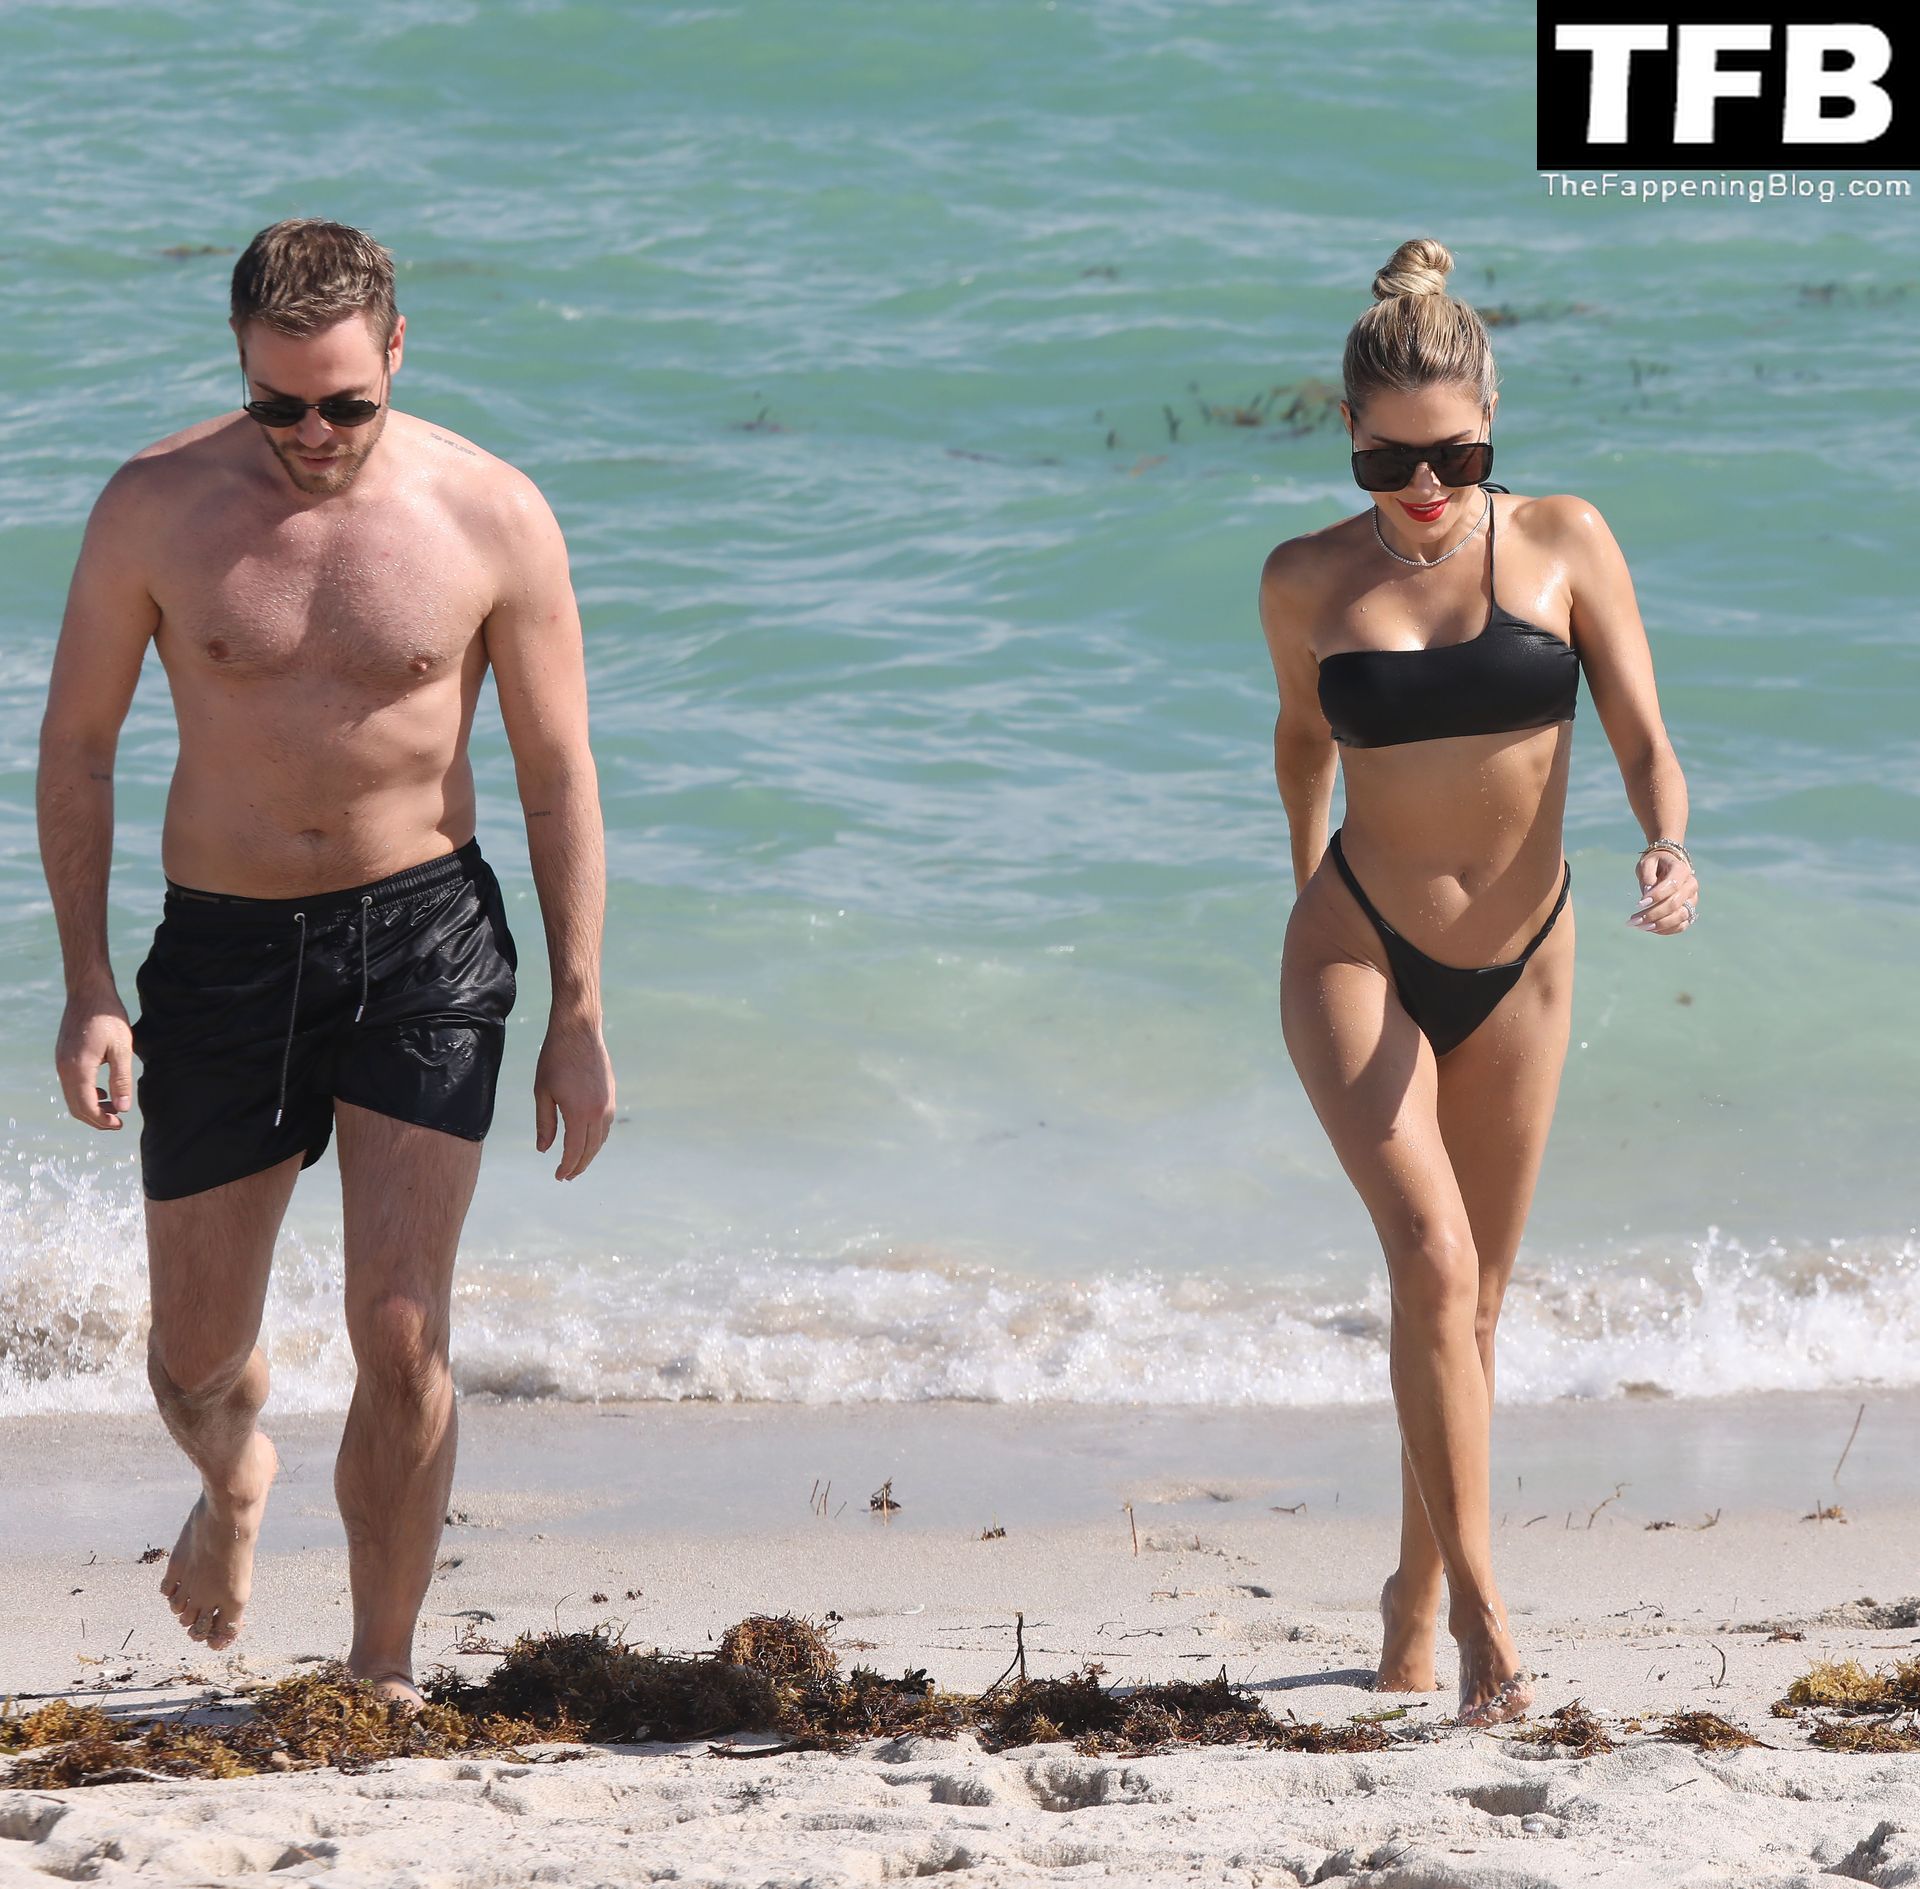 Sylvie Meis Shows Off Her Sexy Bikini Body on the Beach in Miami (126 Photos)